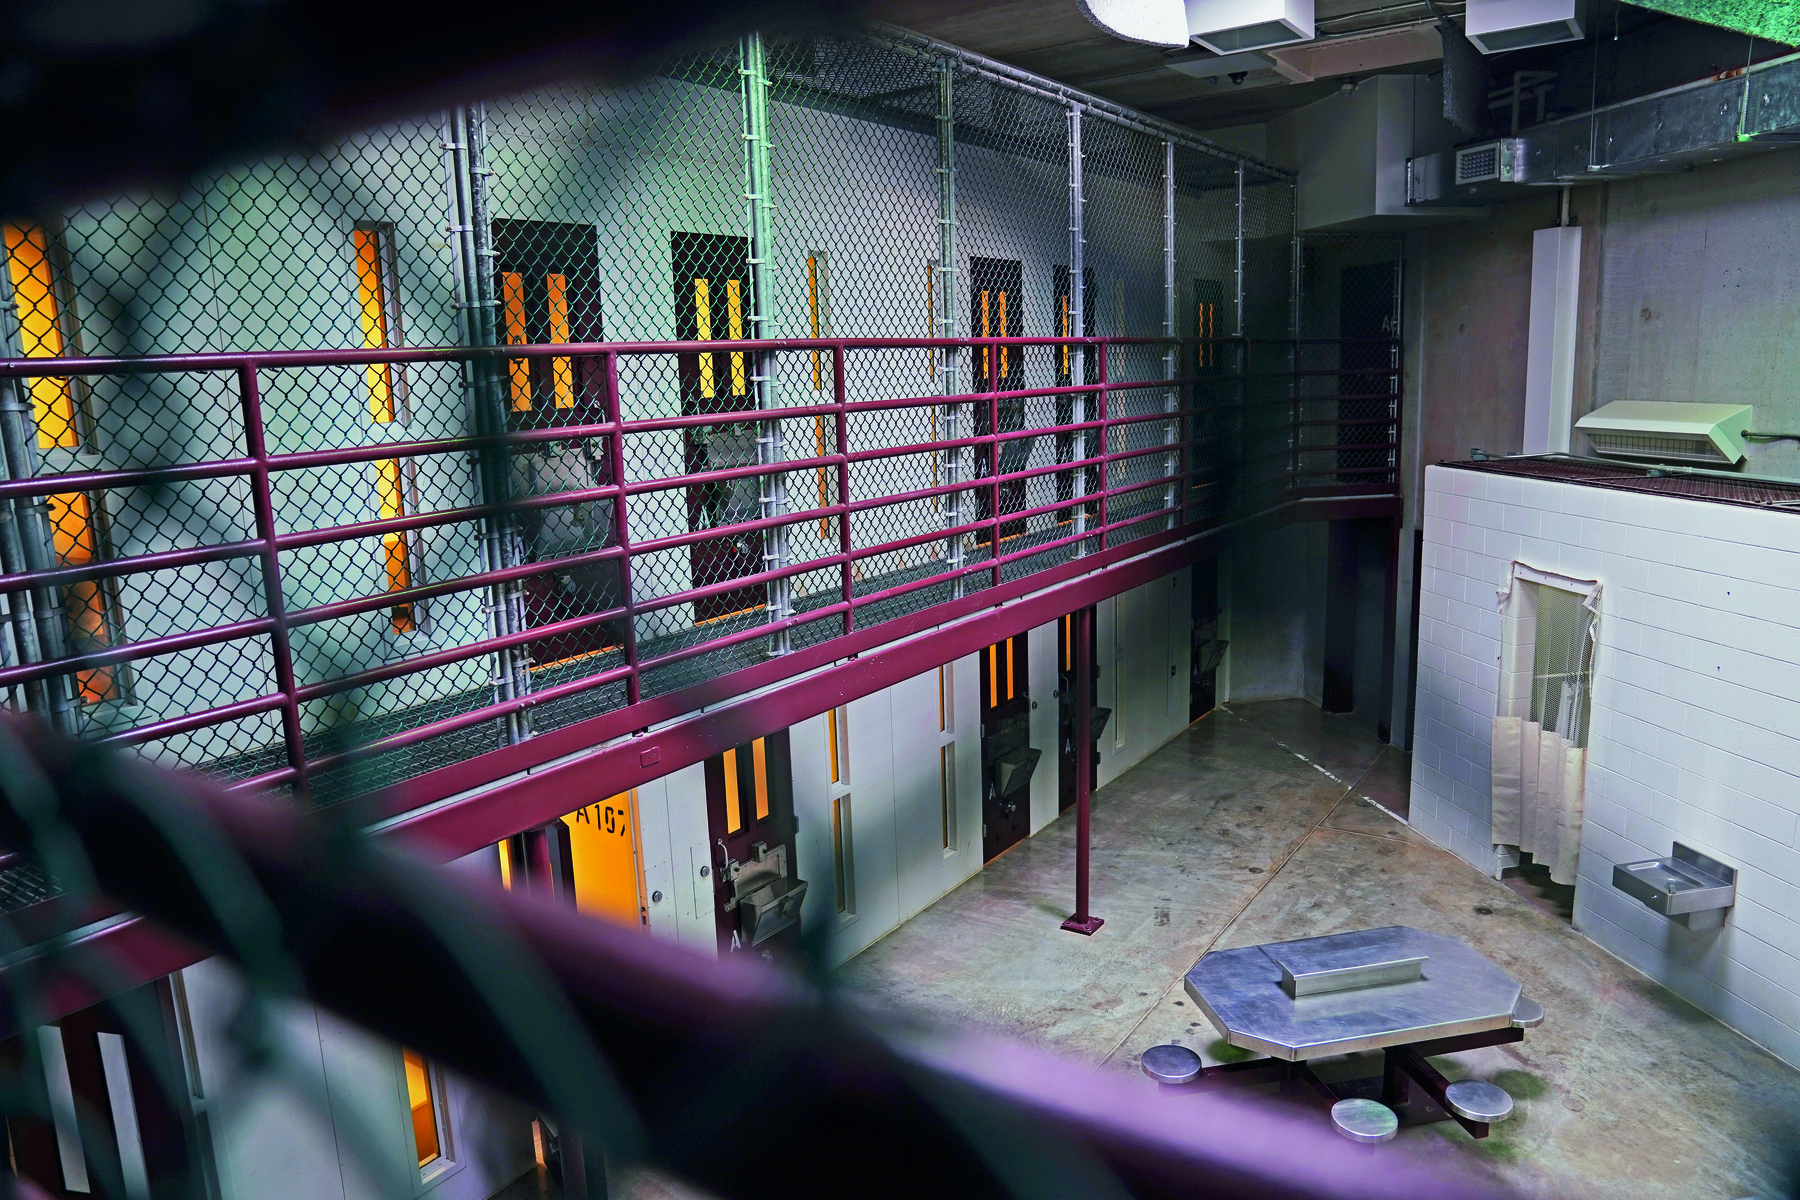 Fotografia. Pátio interno de uma prisão. São dois andares com paredes cinzentas, portas e janelas finas e compridas. O andar de cima tem grades de proteção. No pátio, uma mesa com bancos fixos.